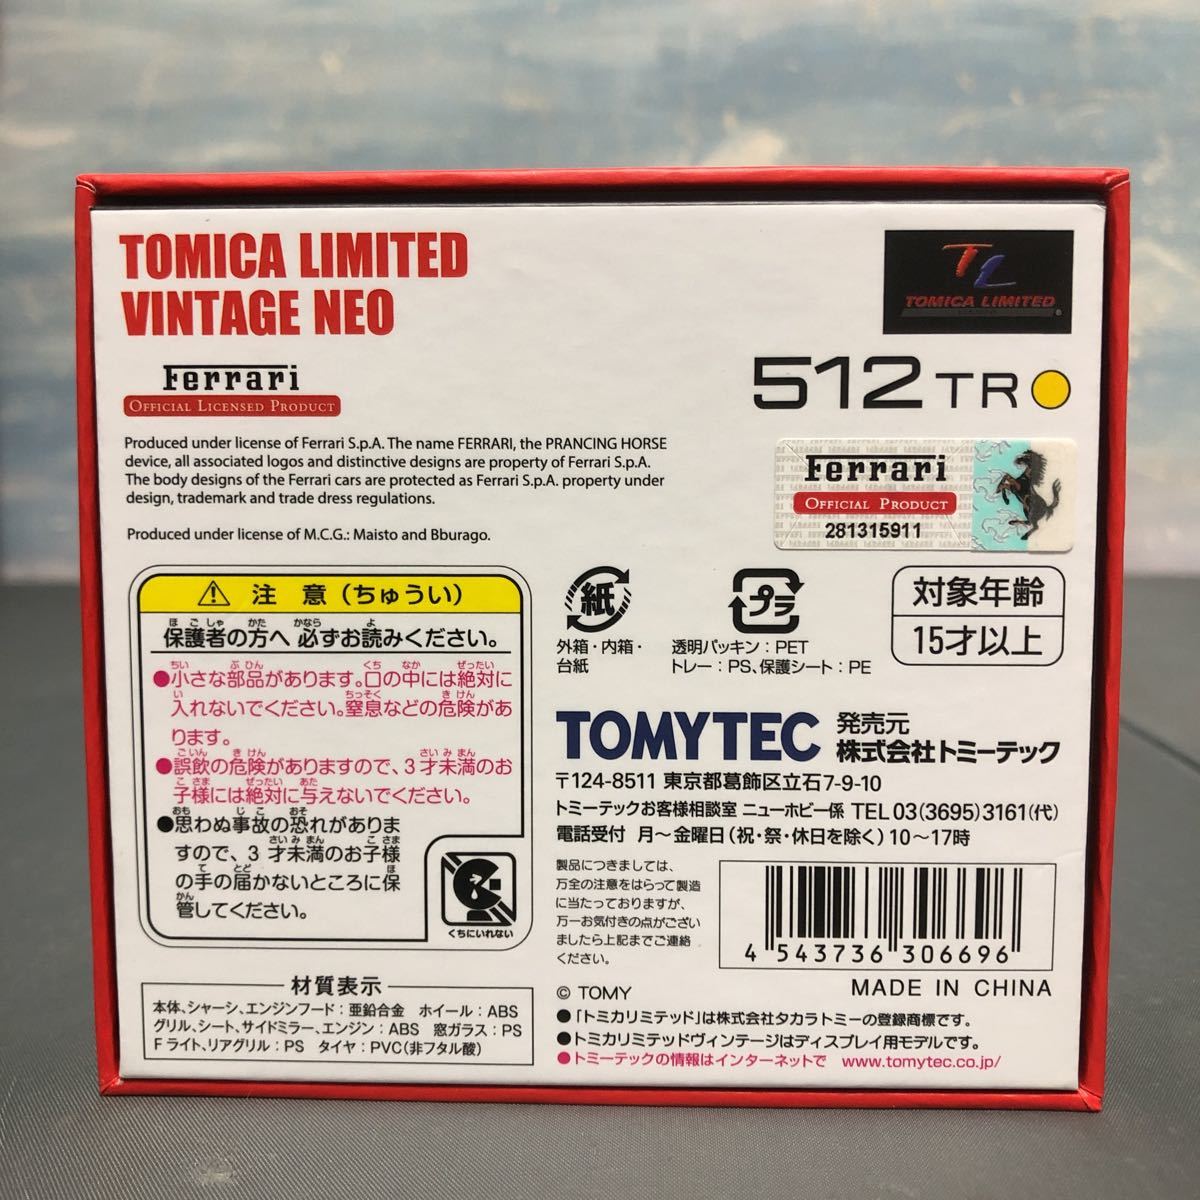 トミカ リミテッド ヴィンテージ ネオ フェラーリ 512TR TOMICA LIMITED VINTAGE NEO FERRARI 黄色 新品未開封